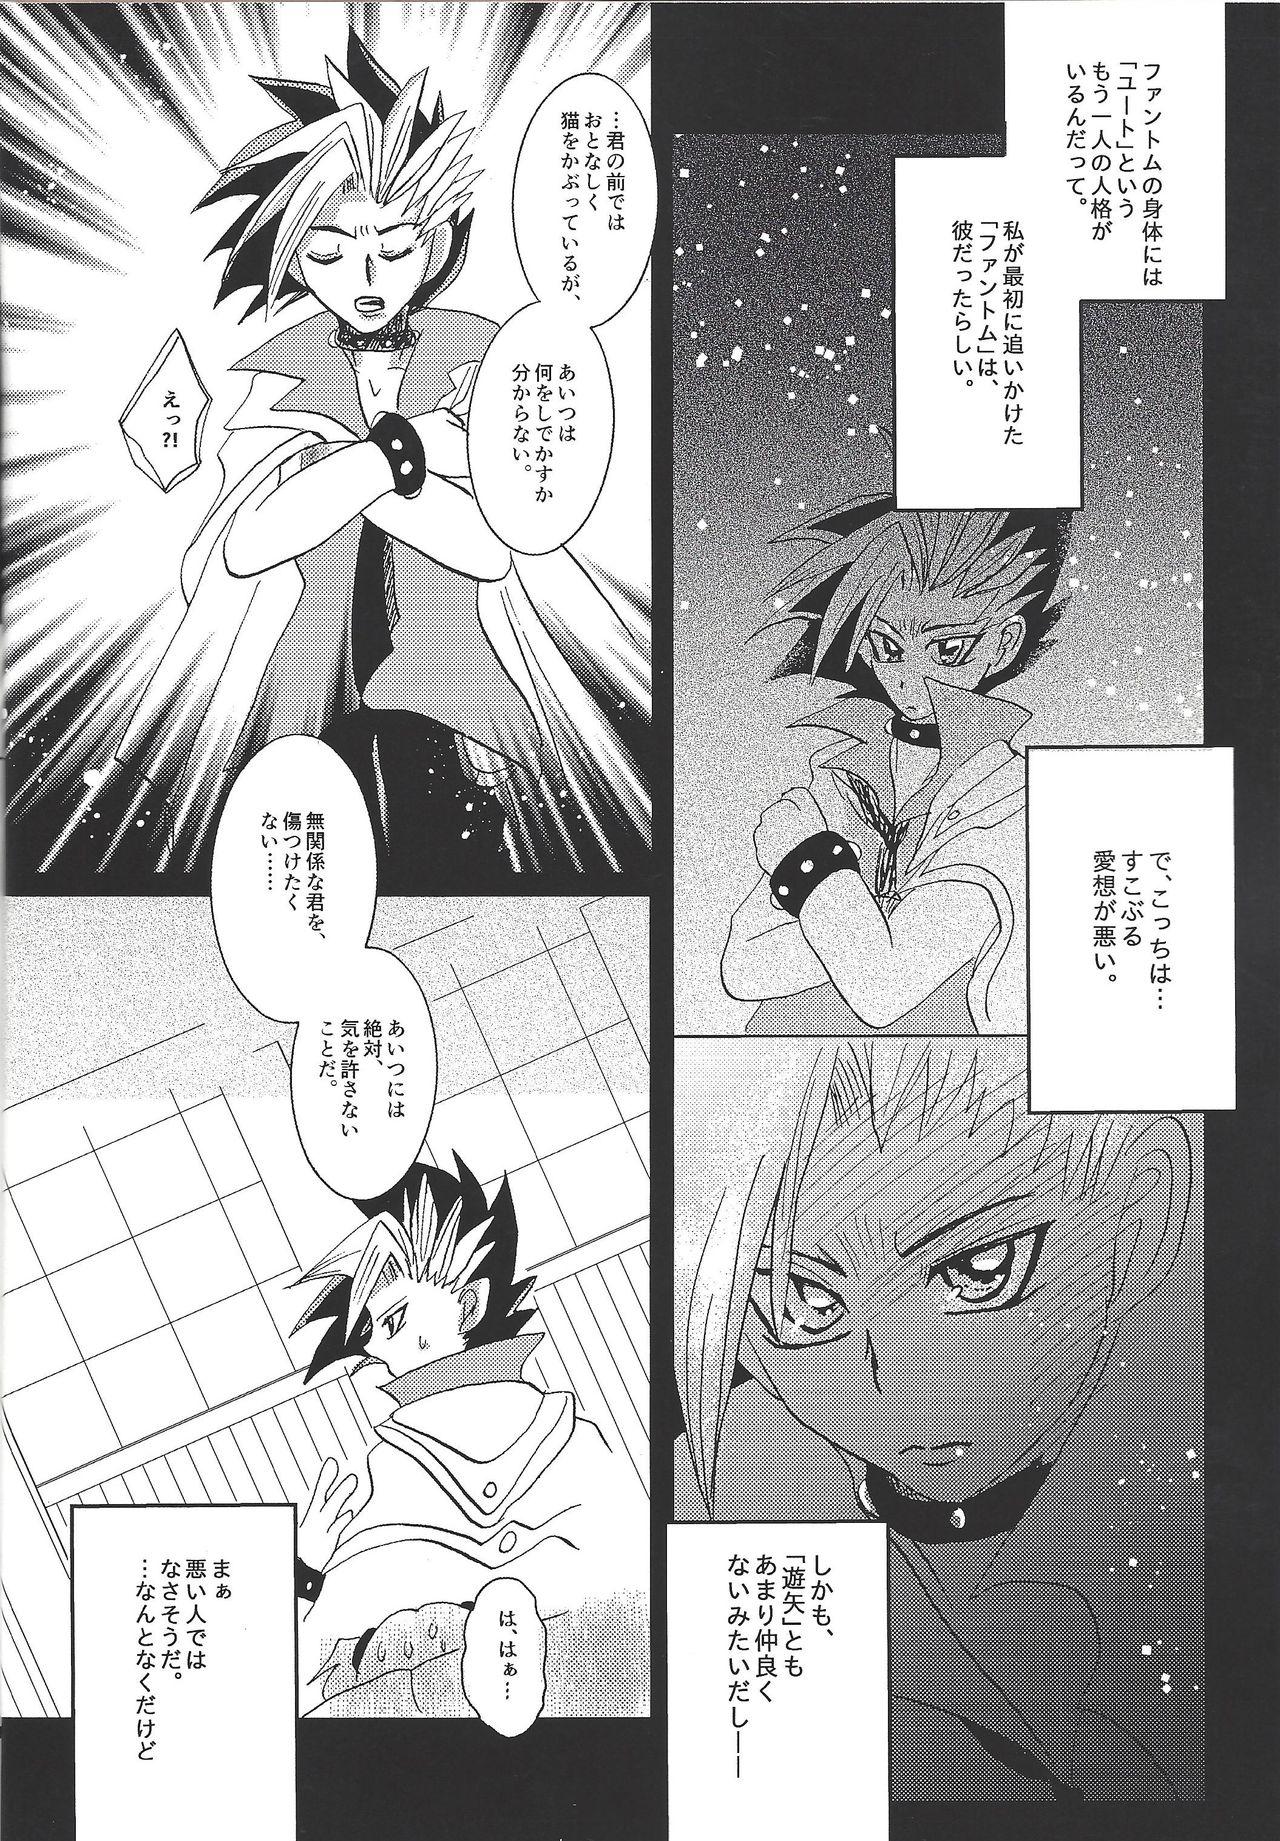 Sesso YUZU HONEY - Yu-gi-oh arc-v Reverse - Page 6